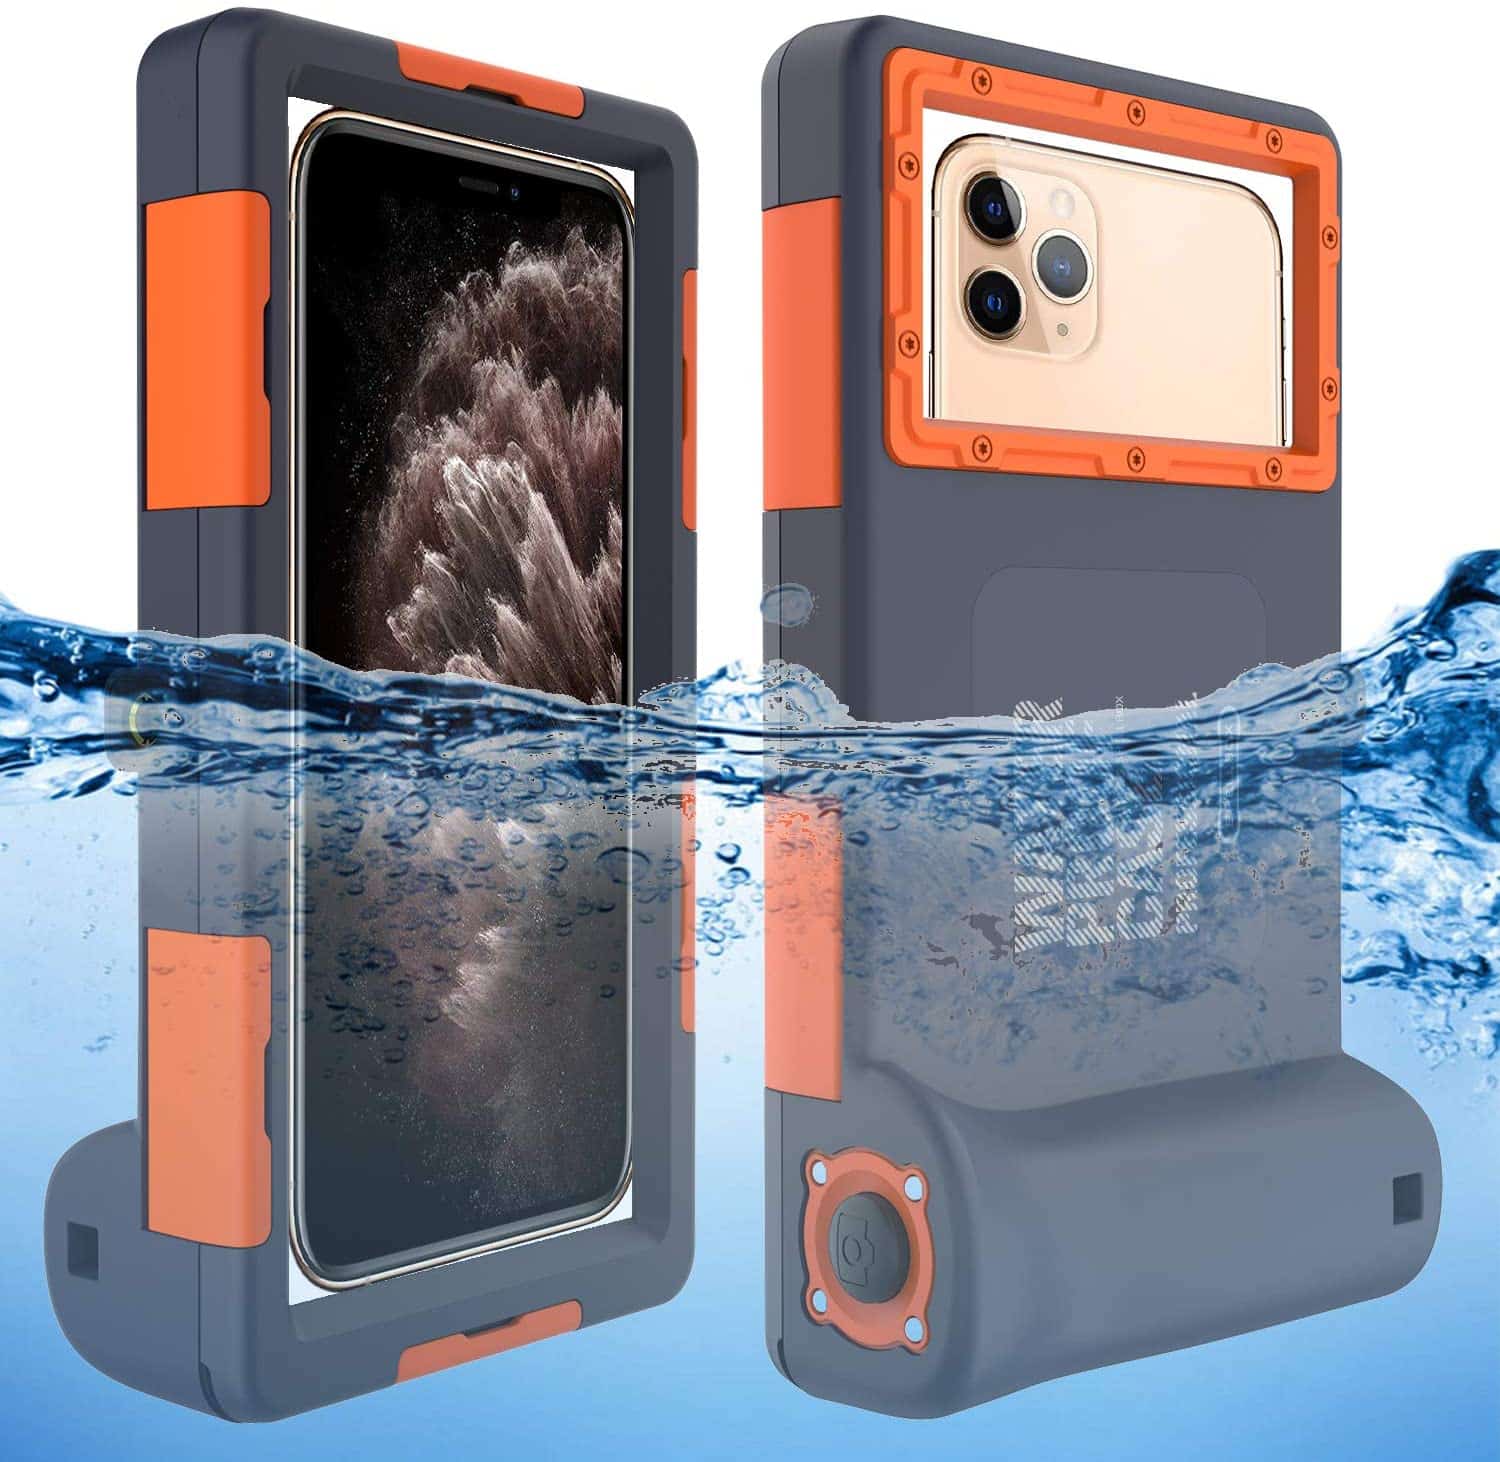 Best iPhone 12 Pro Max Waterproof Cases 2021